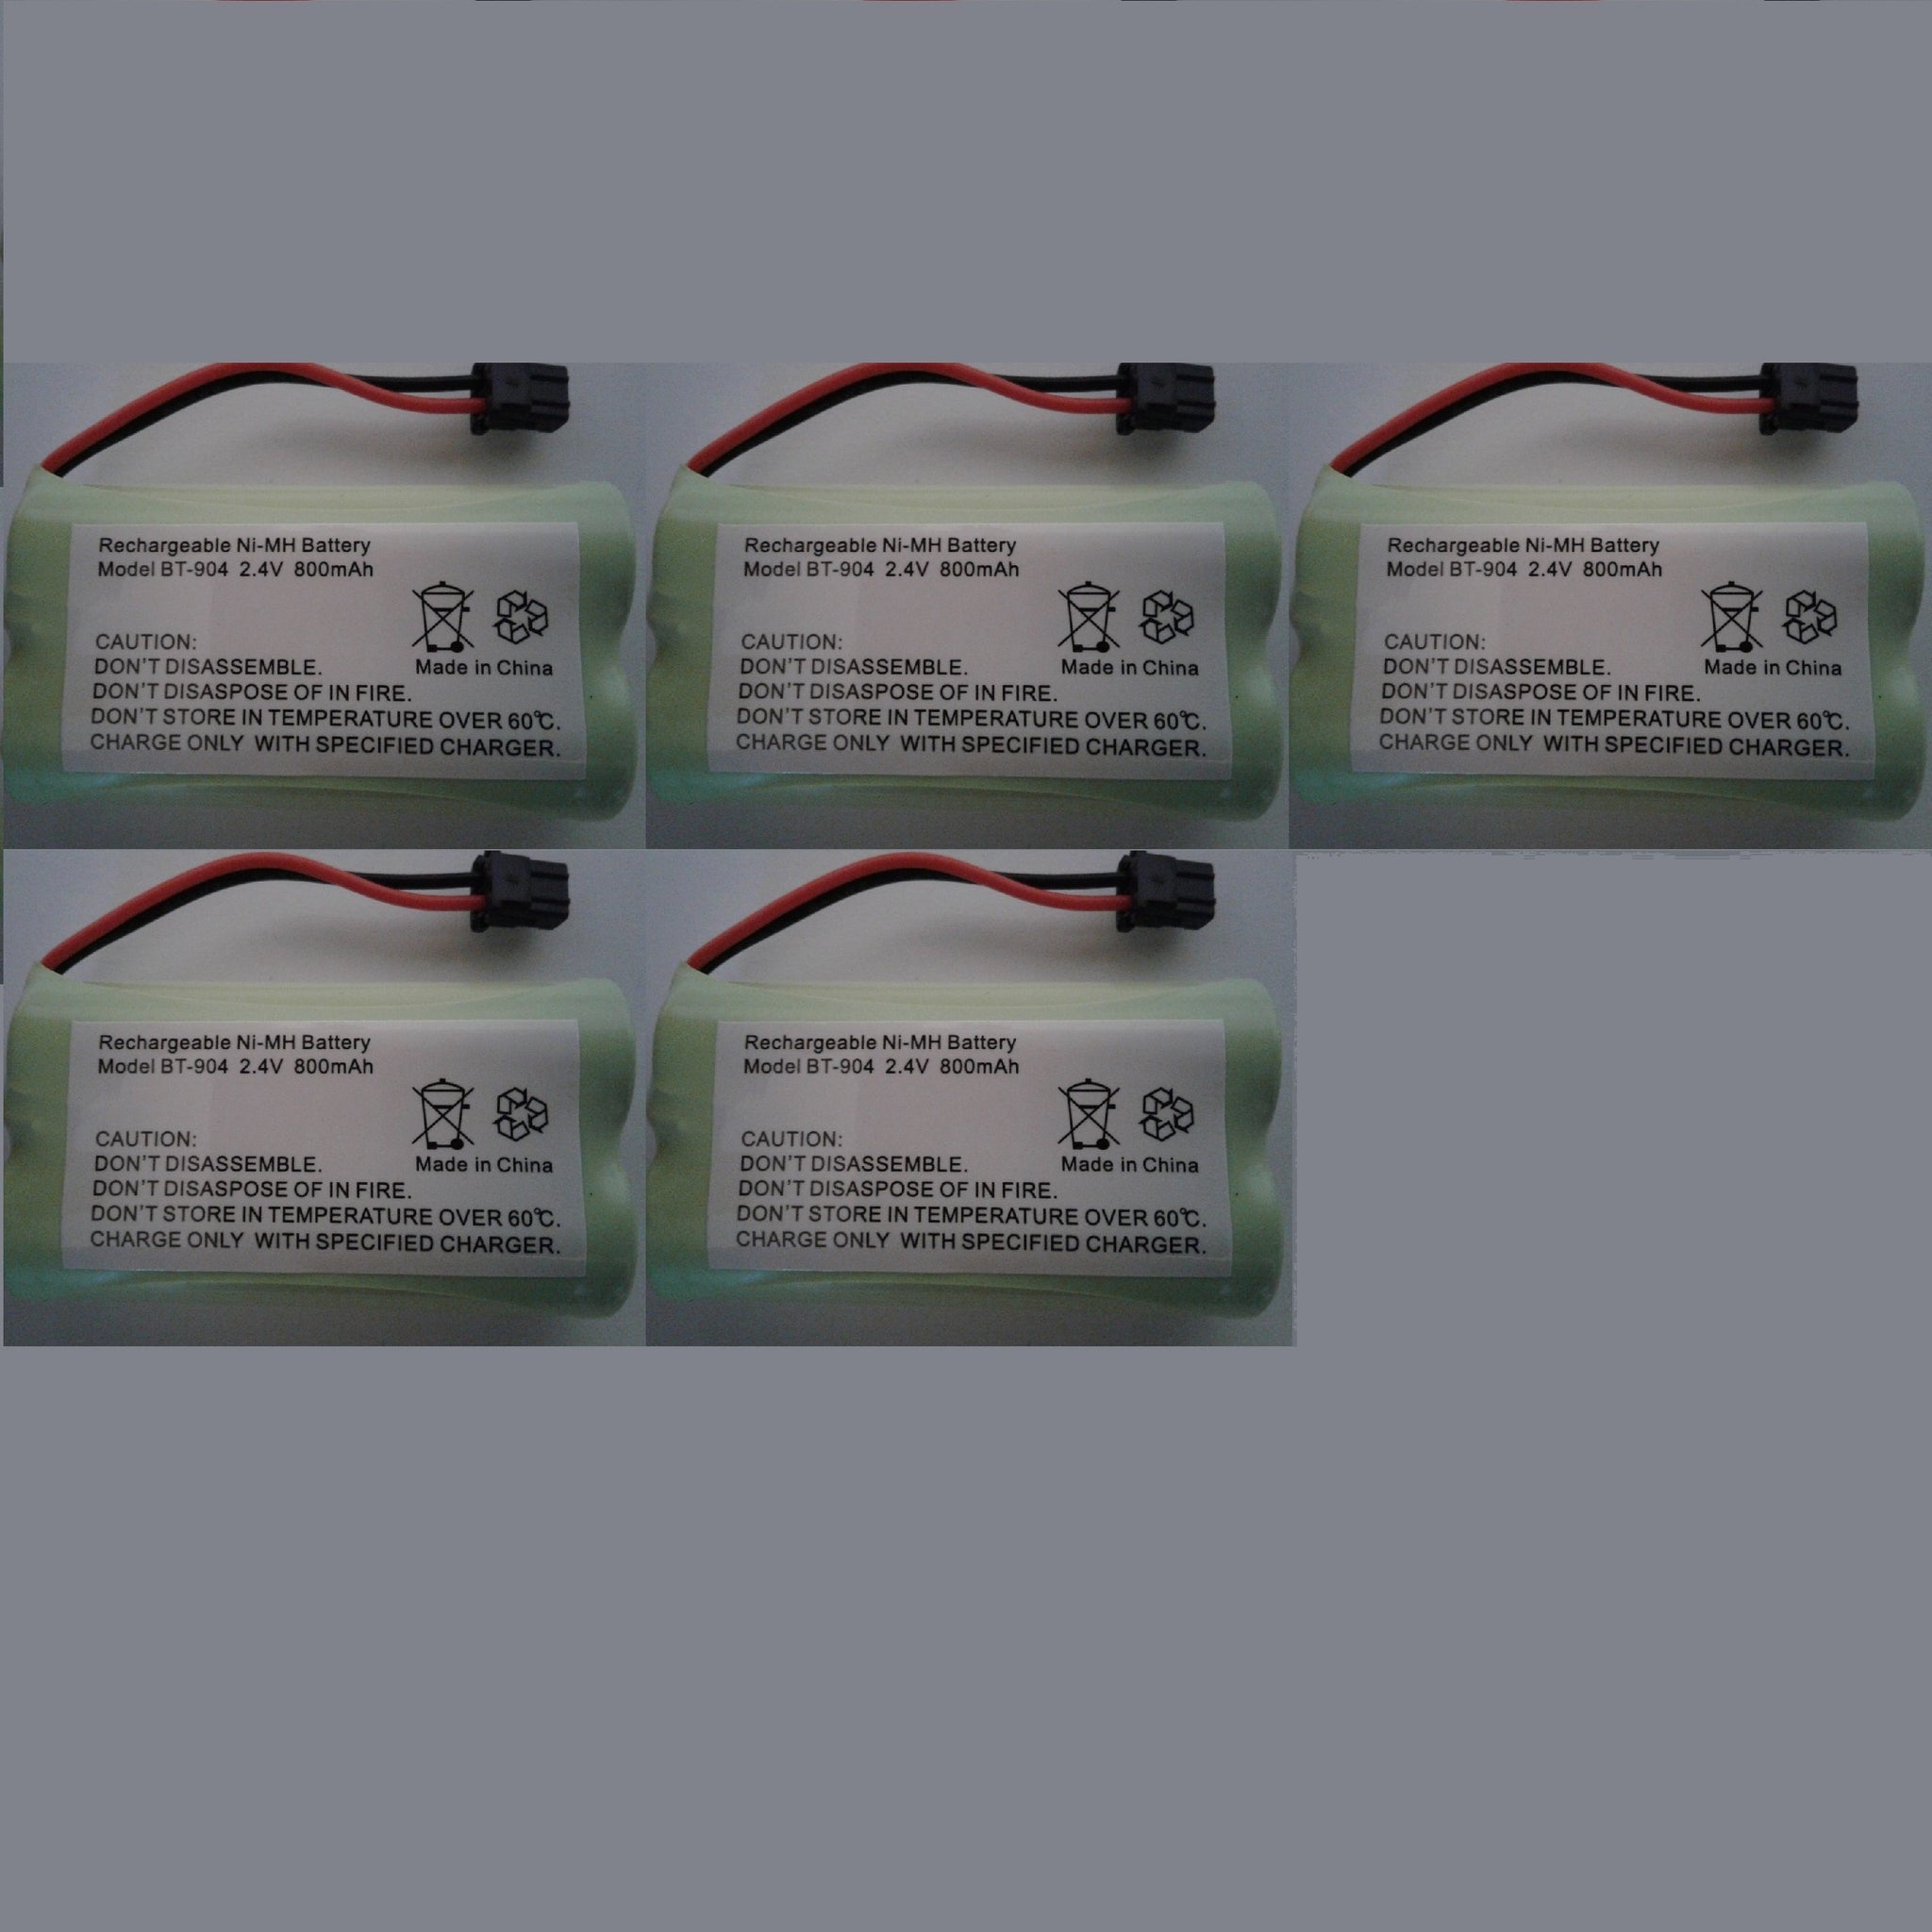 Cordless Phone Battery BT-904 | BT-1007 | BT-1015 | HHR-P506 | Type 17